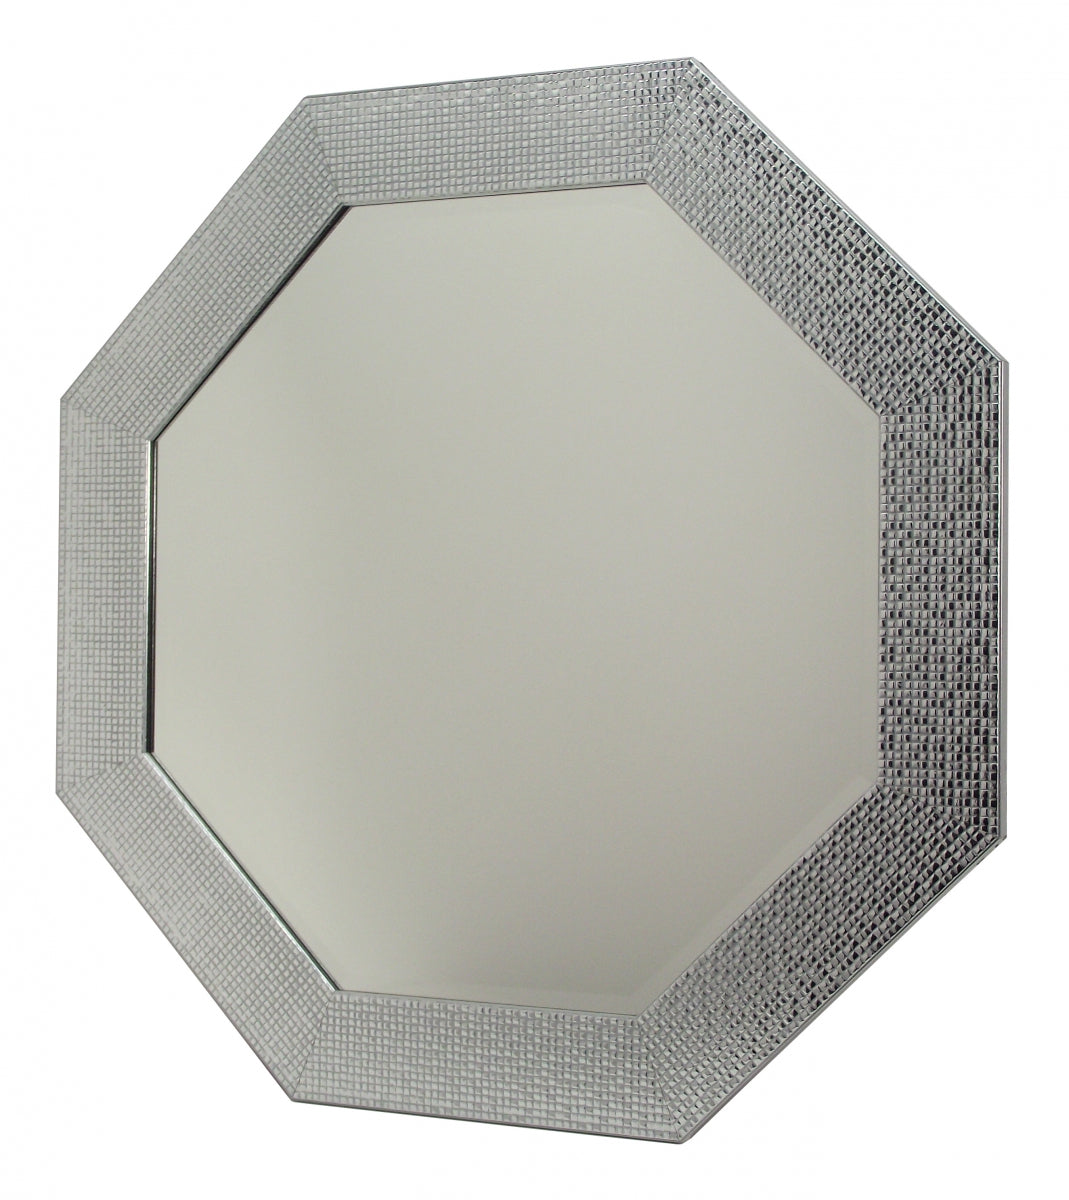 Lustro kryształowe ośmiokątne fazowane 50x50 cm, w ramie drewnianej mozaikowej srebrnej Octa-50/F/85.675 - Obrazy Reprodukcje Ramy | ergopaul.pl